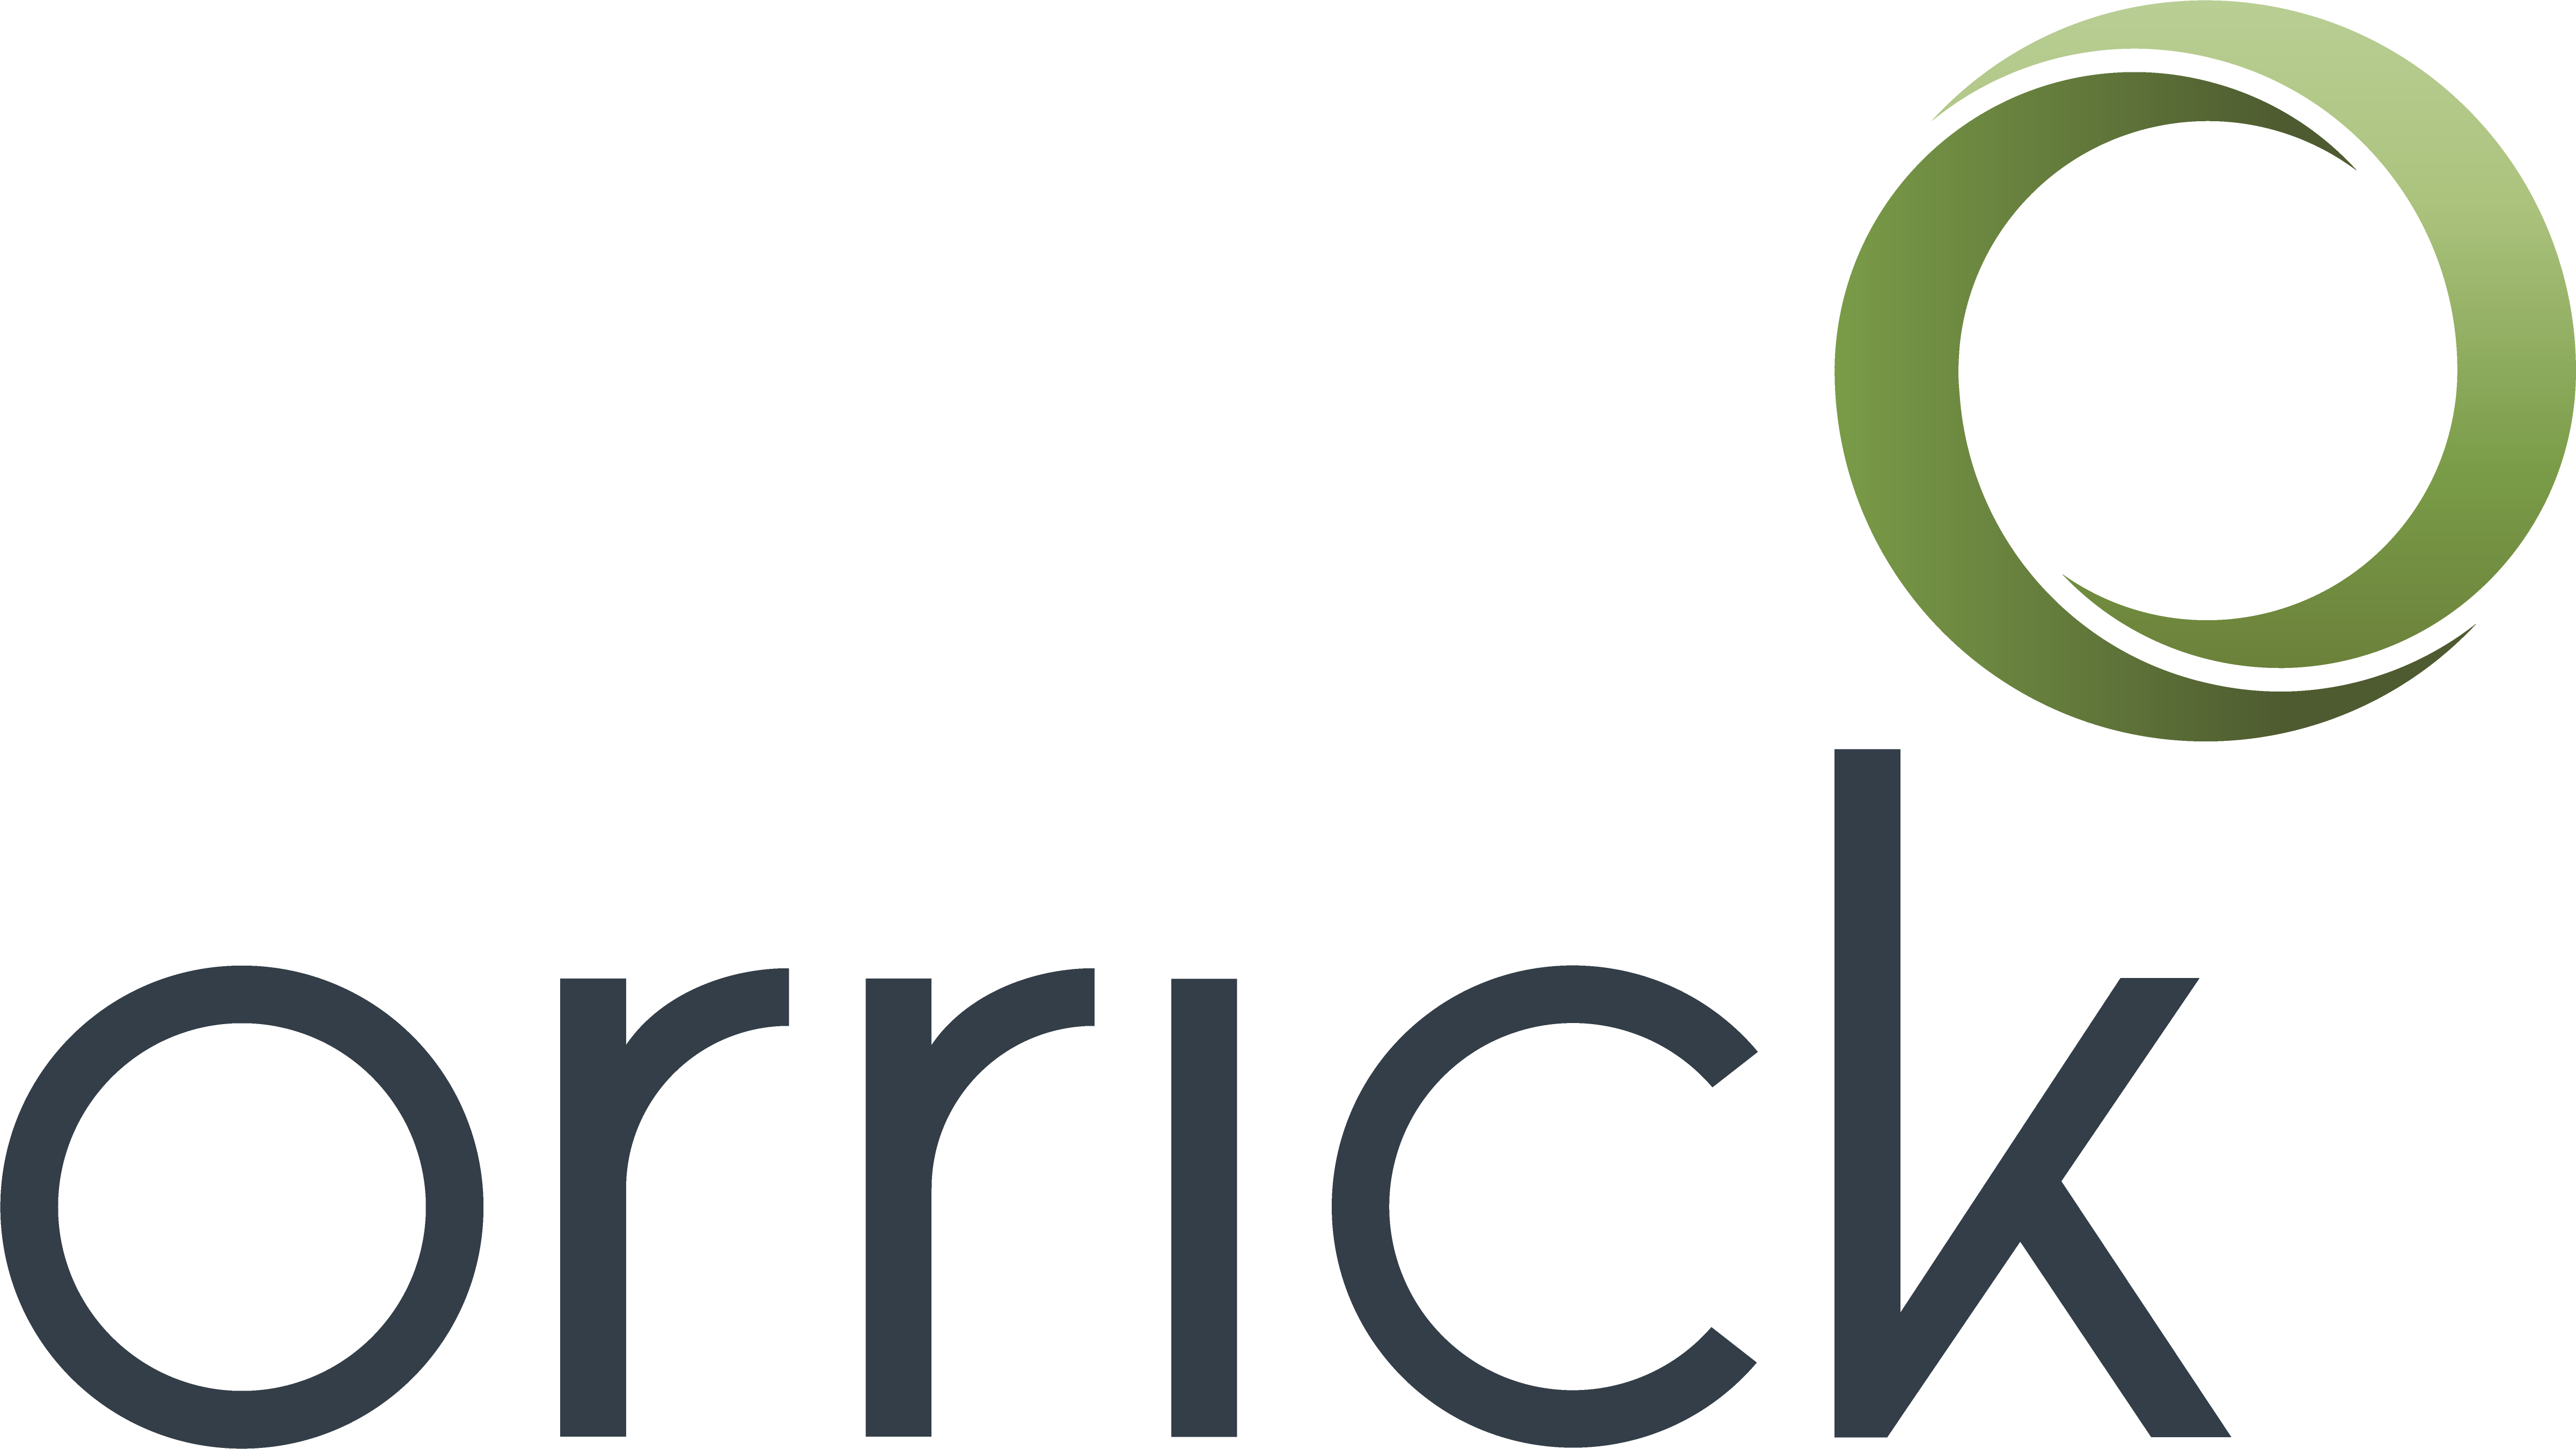 Orrick-Logo